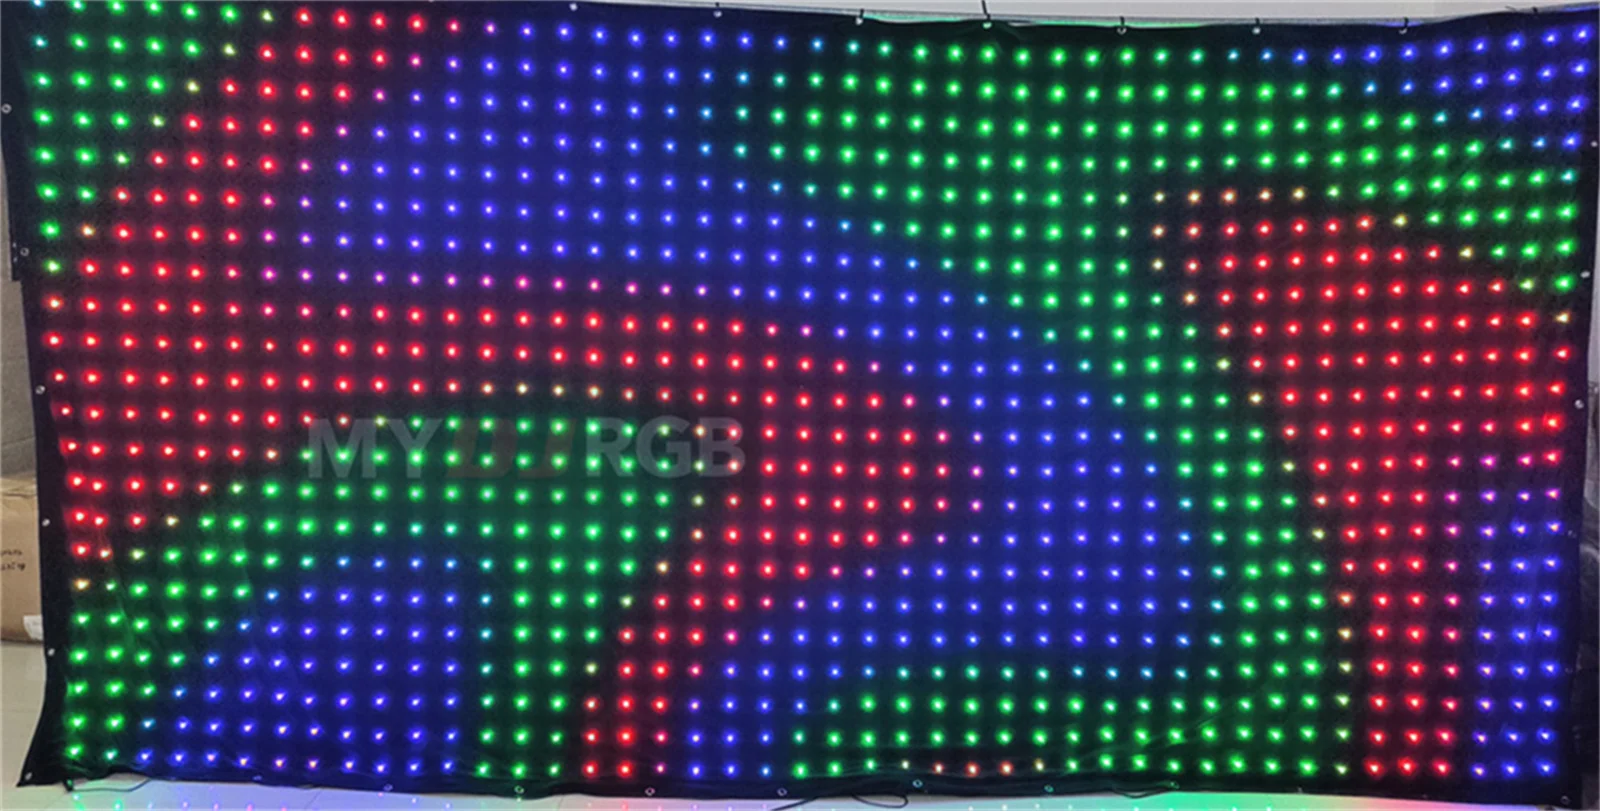 сценическая видеоткань P9 3x5 м, светодиодная шторка DMX-контроля с SD-картой